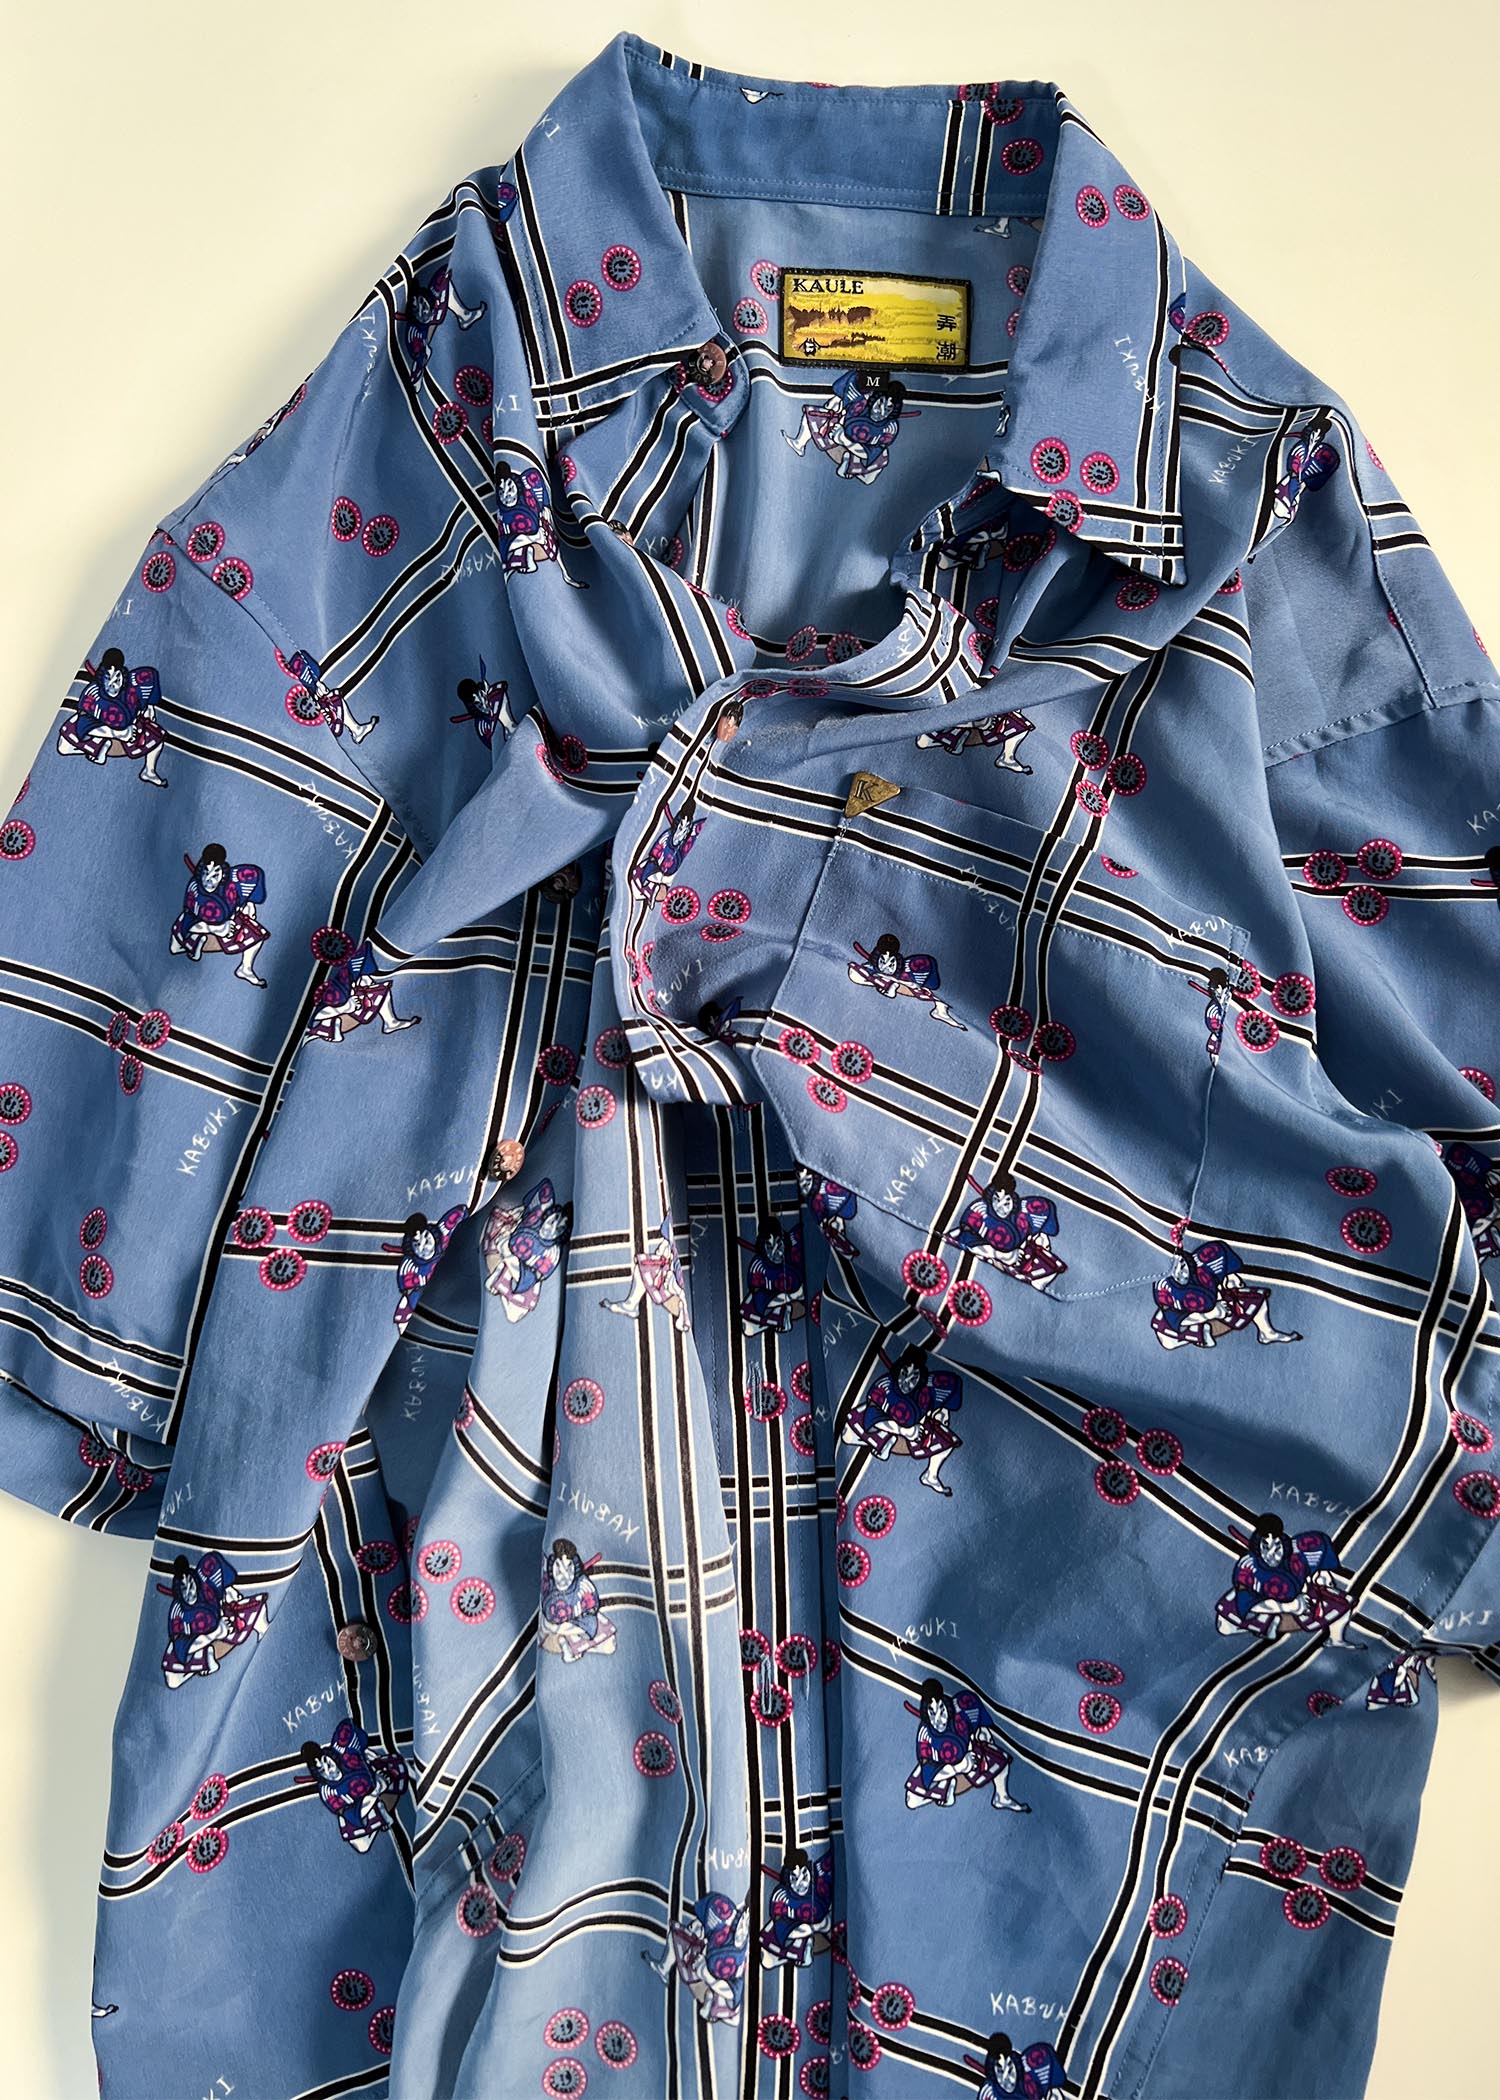 KAULE japanese pattern shirts